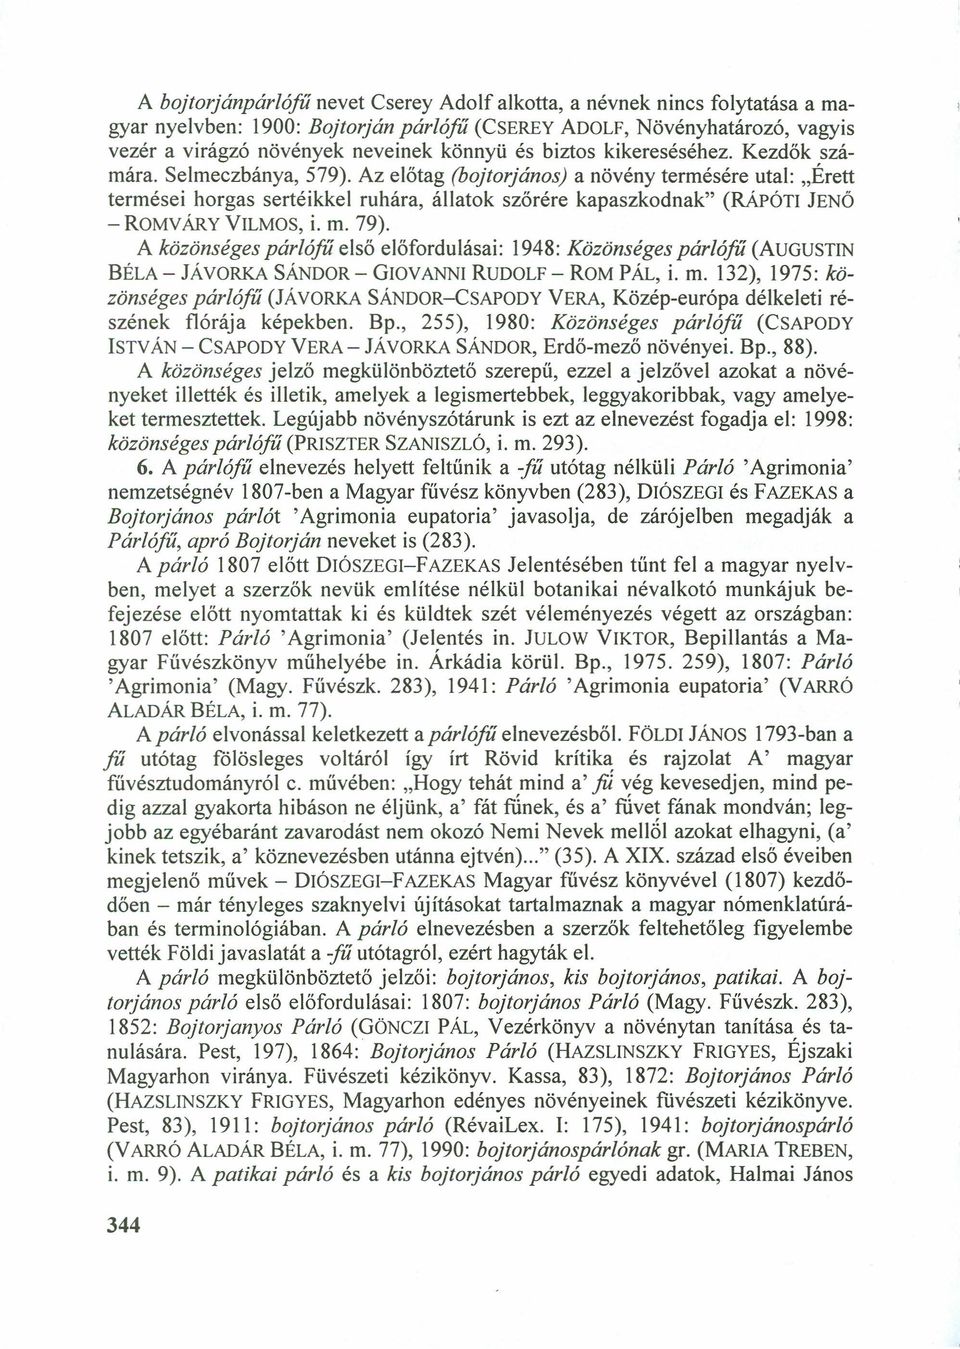 UPÓTI JENŐ - ROMVÁRYVILMOS, i. m. 79). A közönséges párlófű első előfordulásai: 1948: Közönséges párlófű (AUGUSTIN BÉLA- JÁVORKASÁNDOR- GIOVANNIRUDOLF- ROM PÁL, i. m. 132), 1975: közönséges párlófű (JÁVORKASÁNDOR-CSAPODYVERA, Közép-európa délkeleti részének flórája képekben.